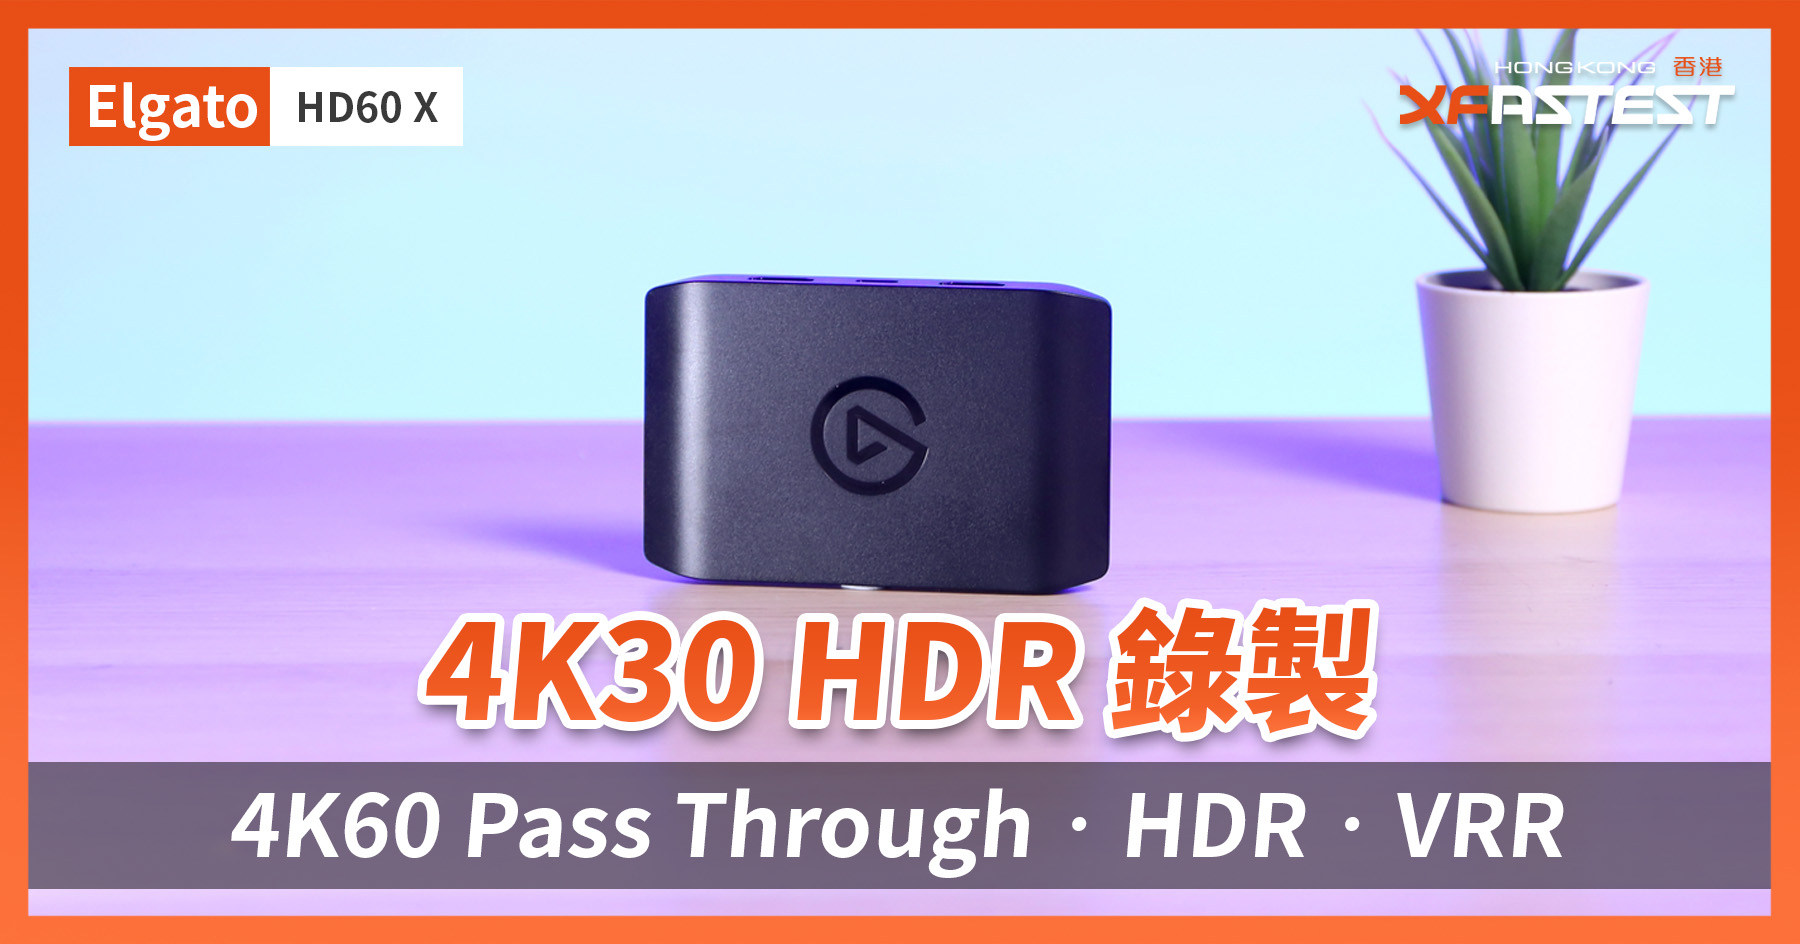 XF 開箱] 4K30 HDR 錄製4K60 Pass Through‧HDR‧VRR Elgato HD60 X